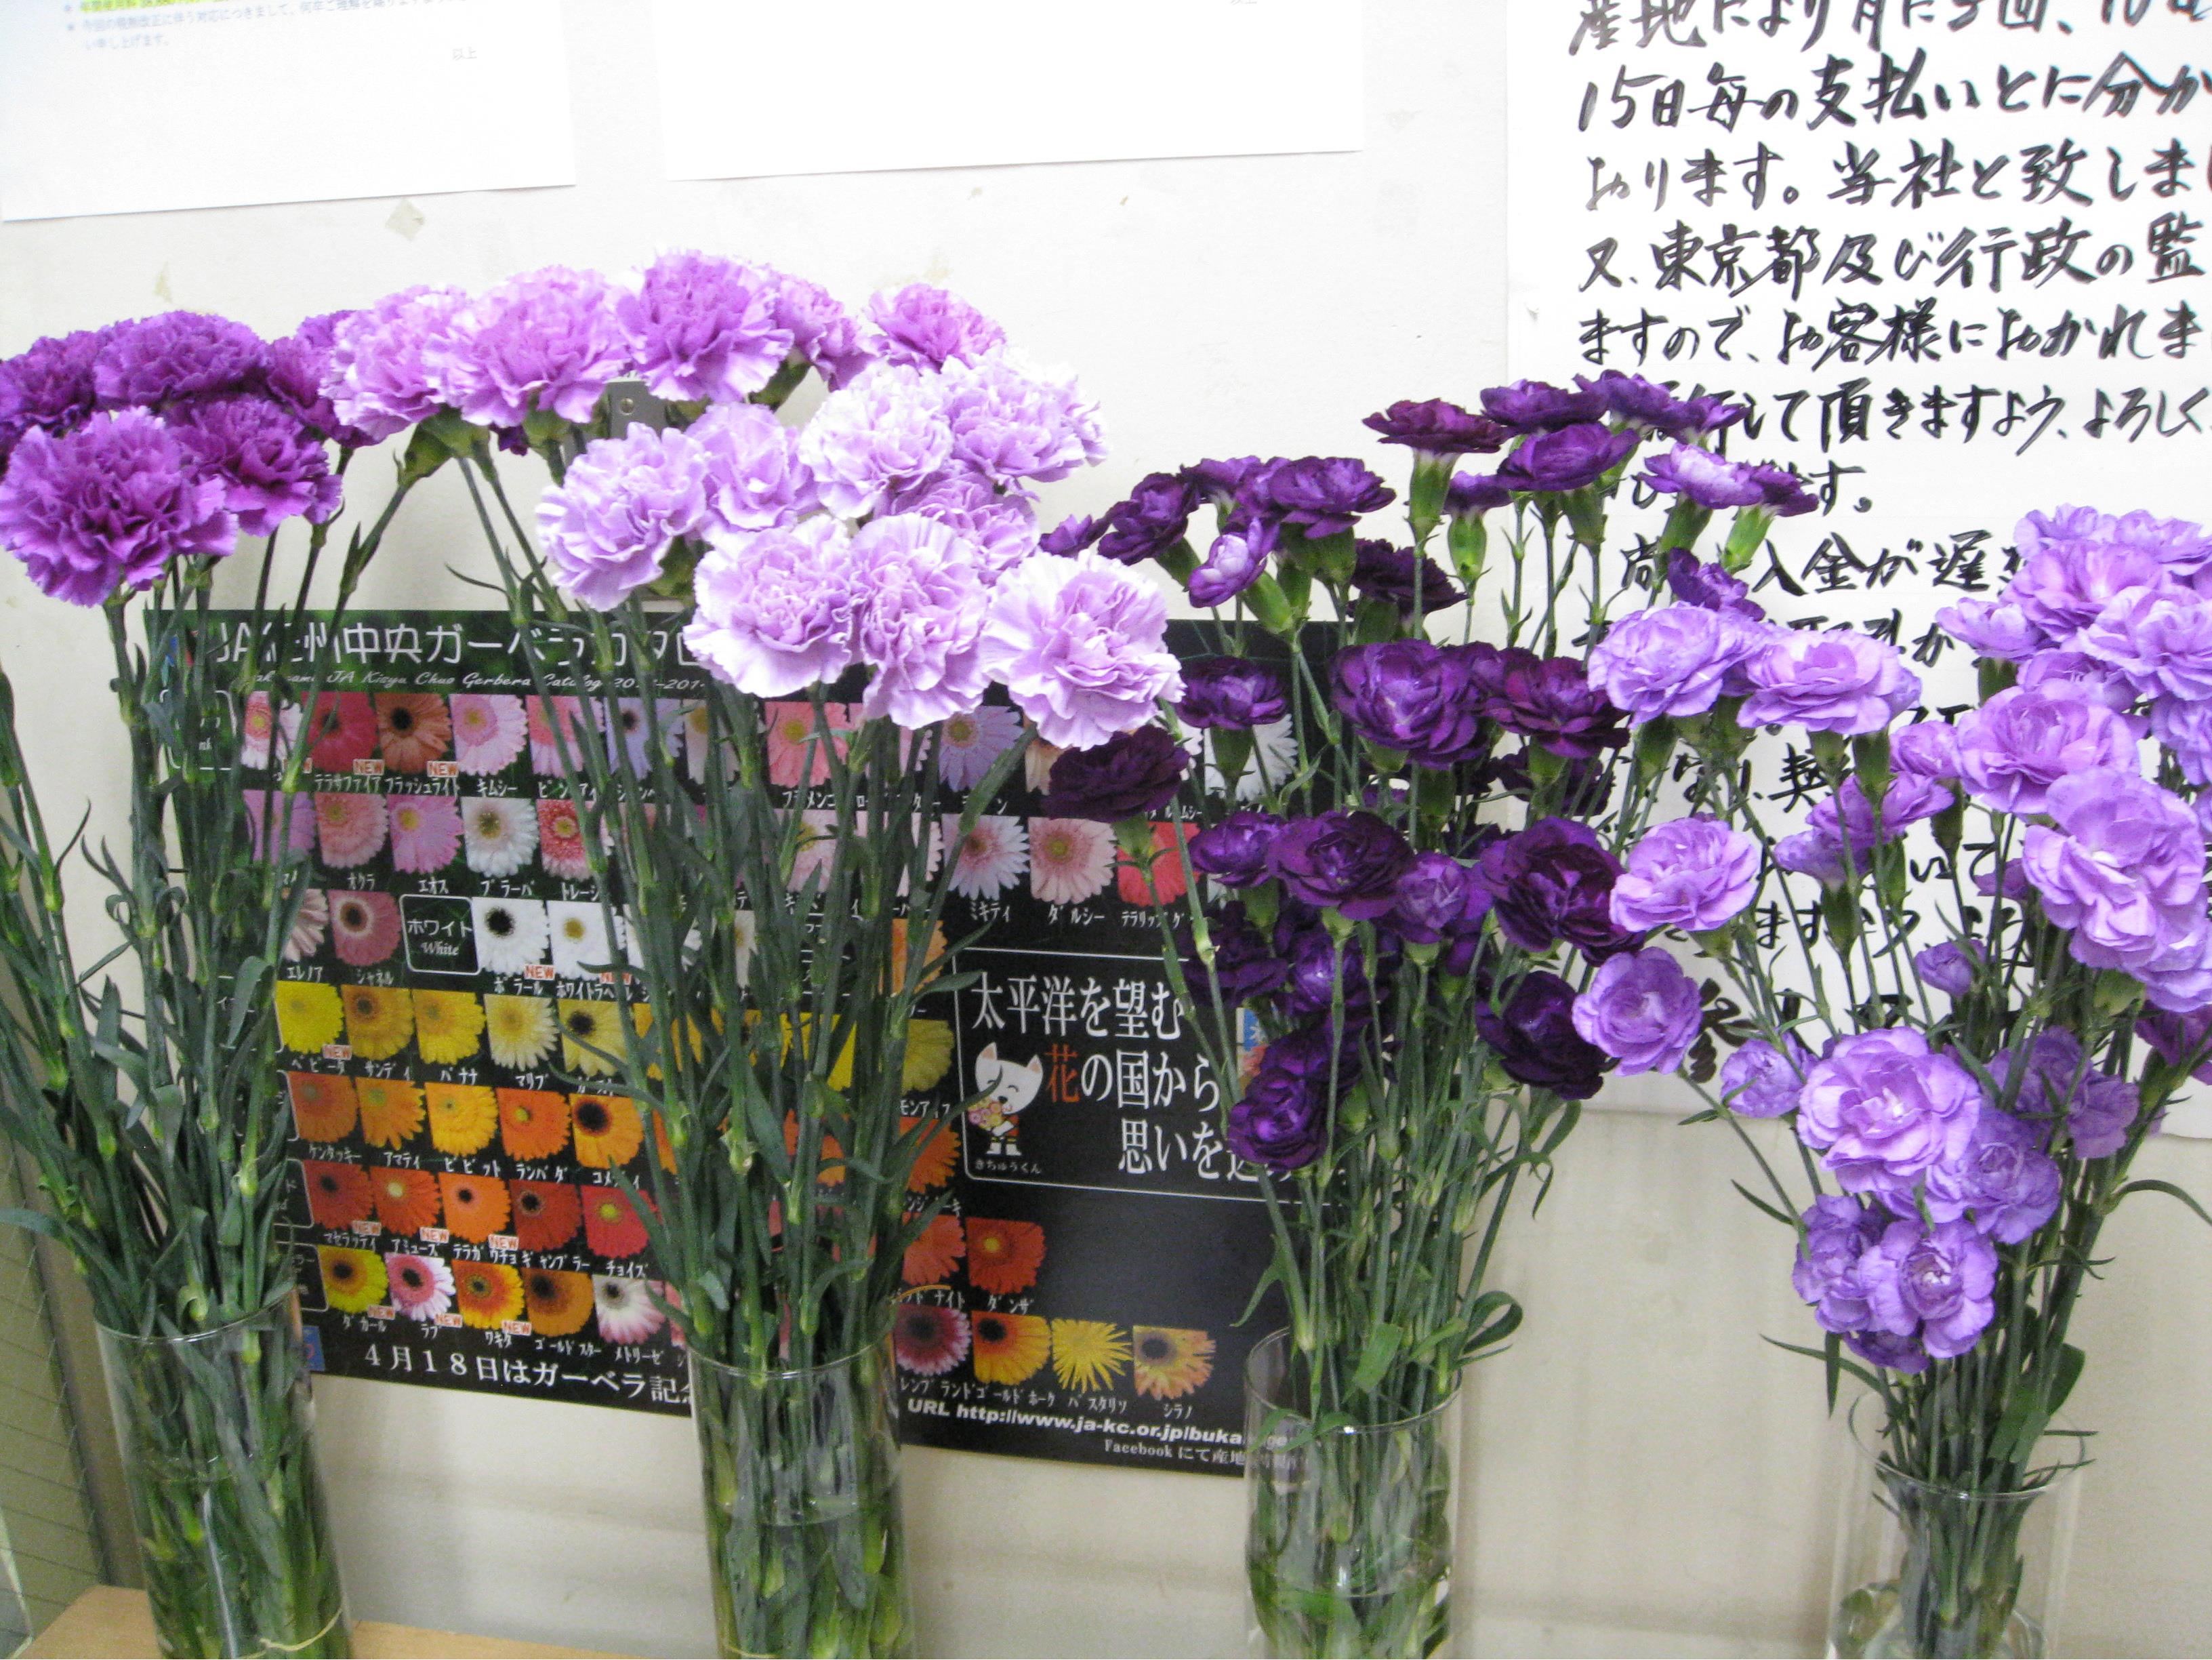 میخک رقم Moondust به عنوان اولین گل تراریخته که در دنیا به فروش می رسد. عکس از حراجی گل در شهر کاسای ژاپن گرفته شده